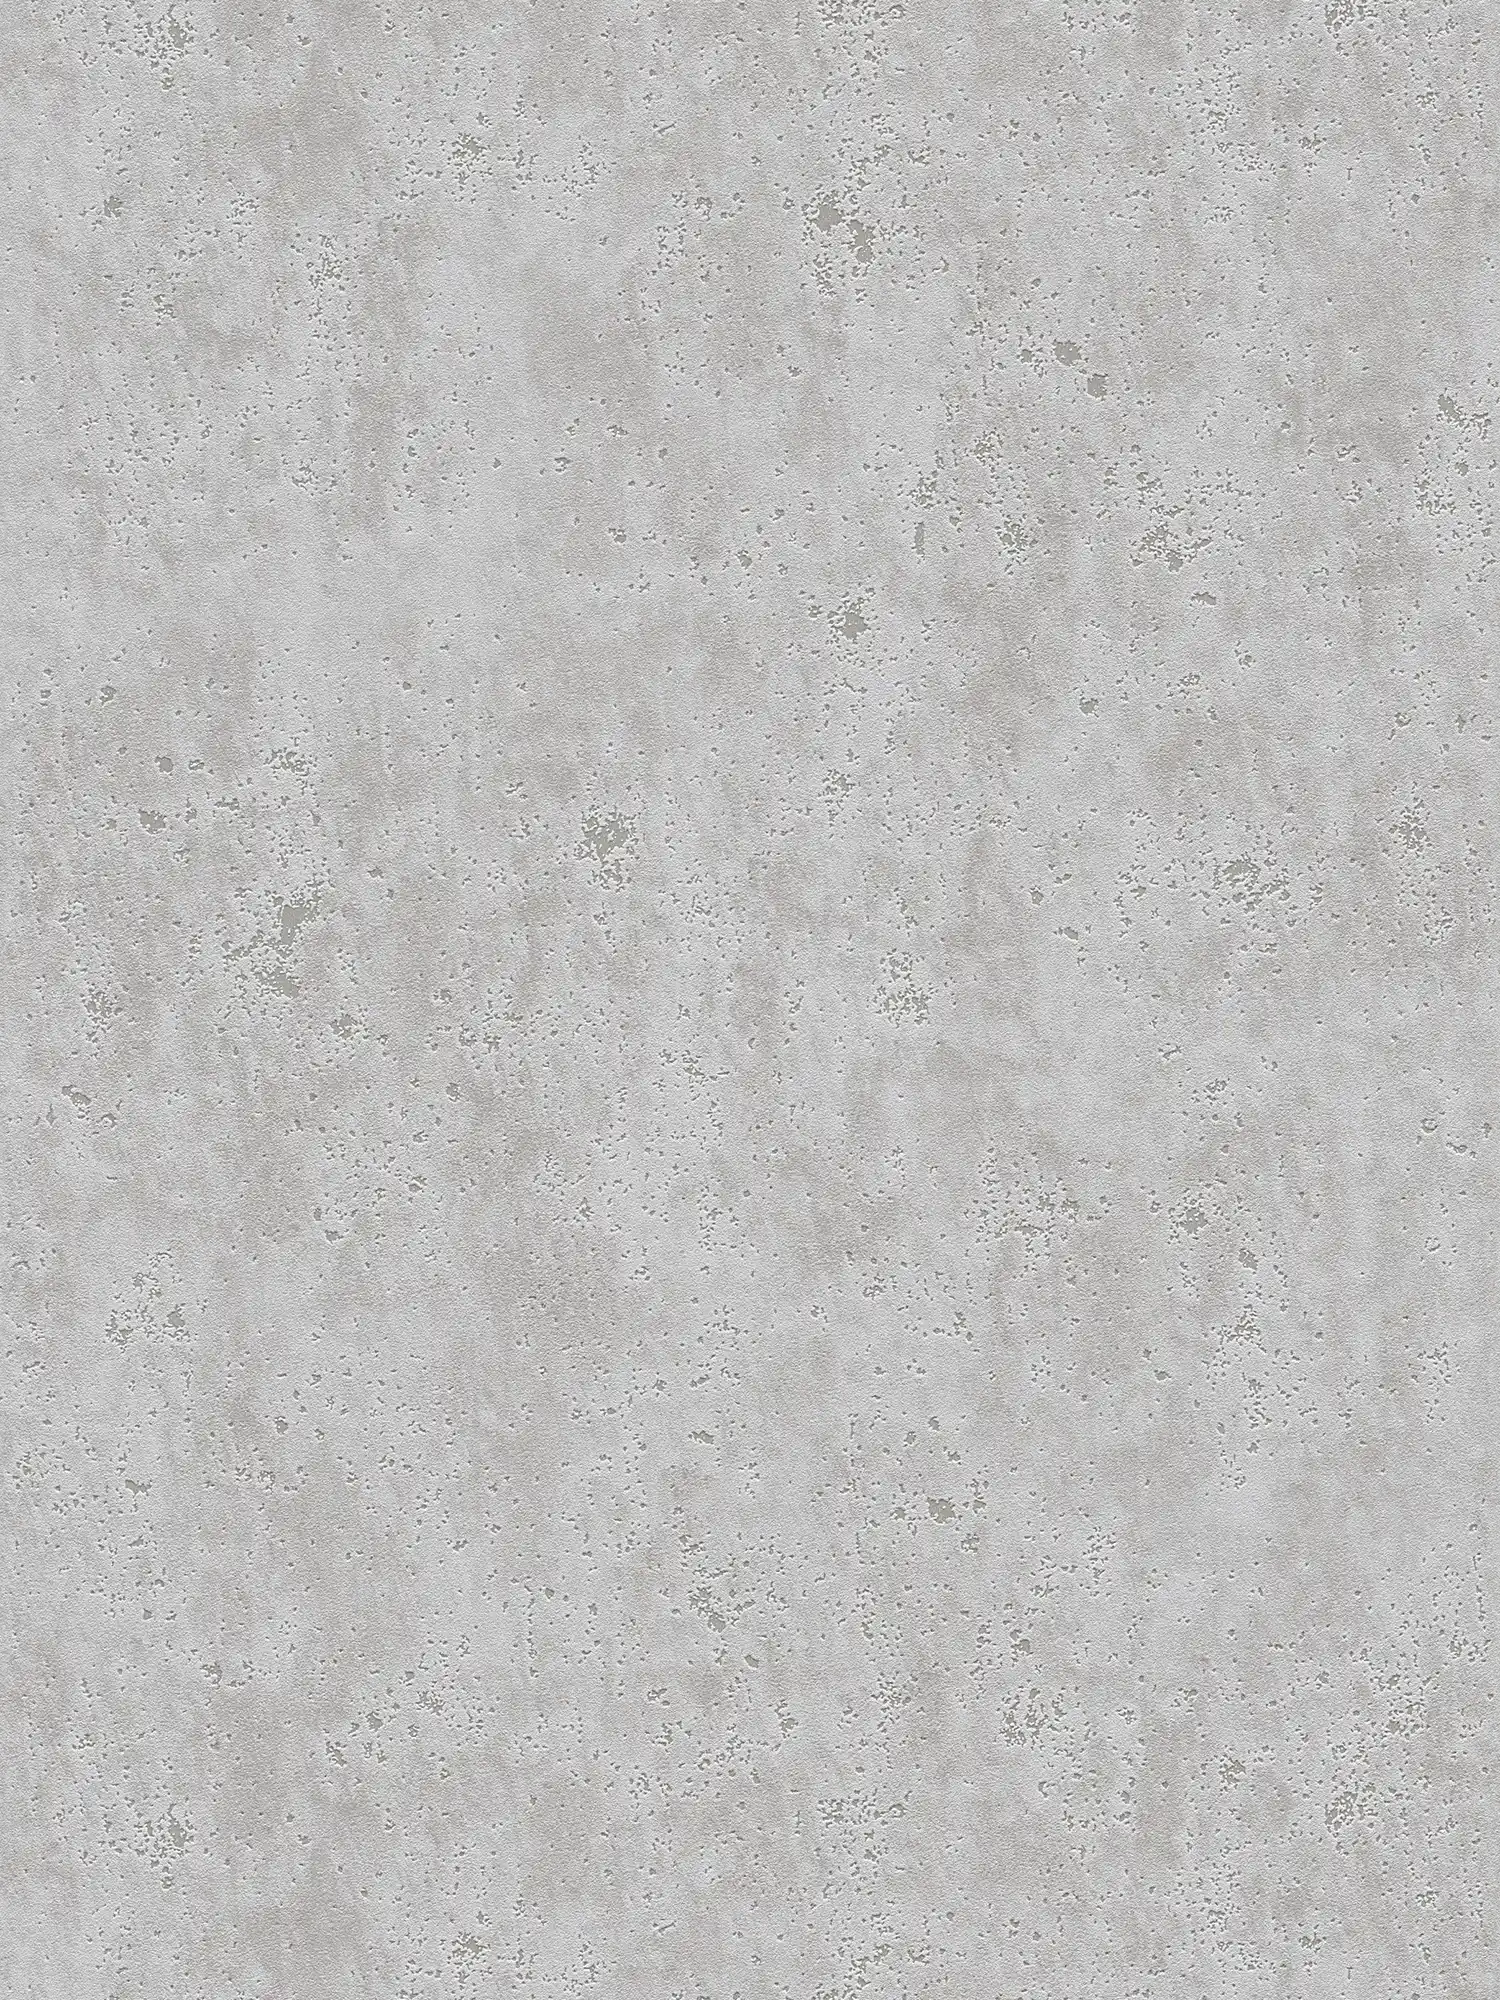 Papier peint aspect plâtre avec structure de surface rugueuse - gris
